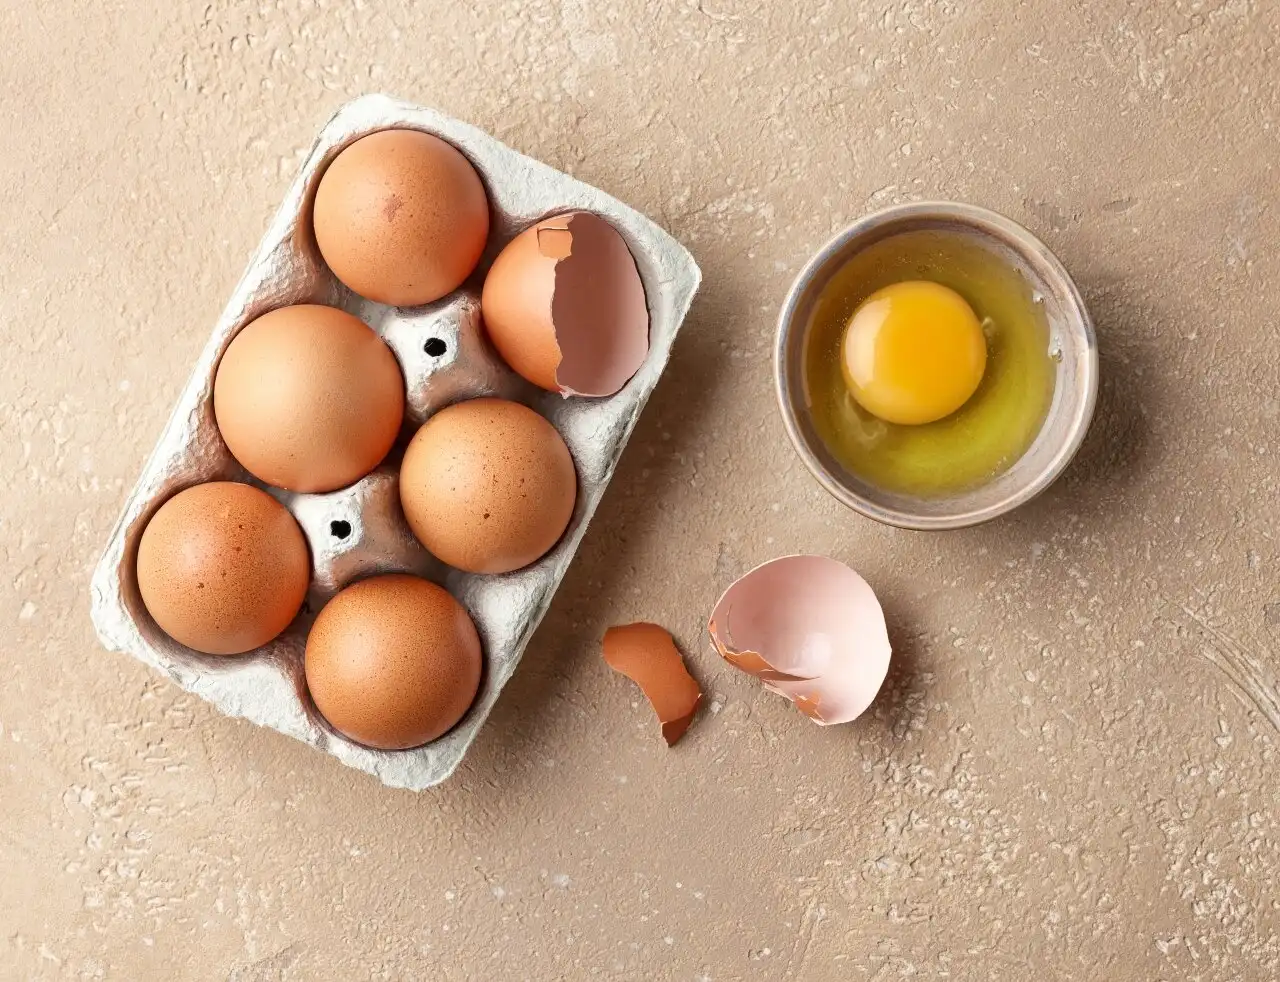 จริงหรือปล่าว กินไข่ทำคอเลสเตอรอลสูง HealthServ